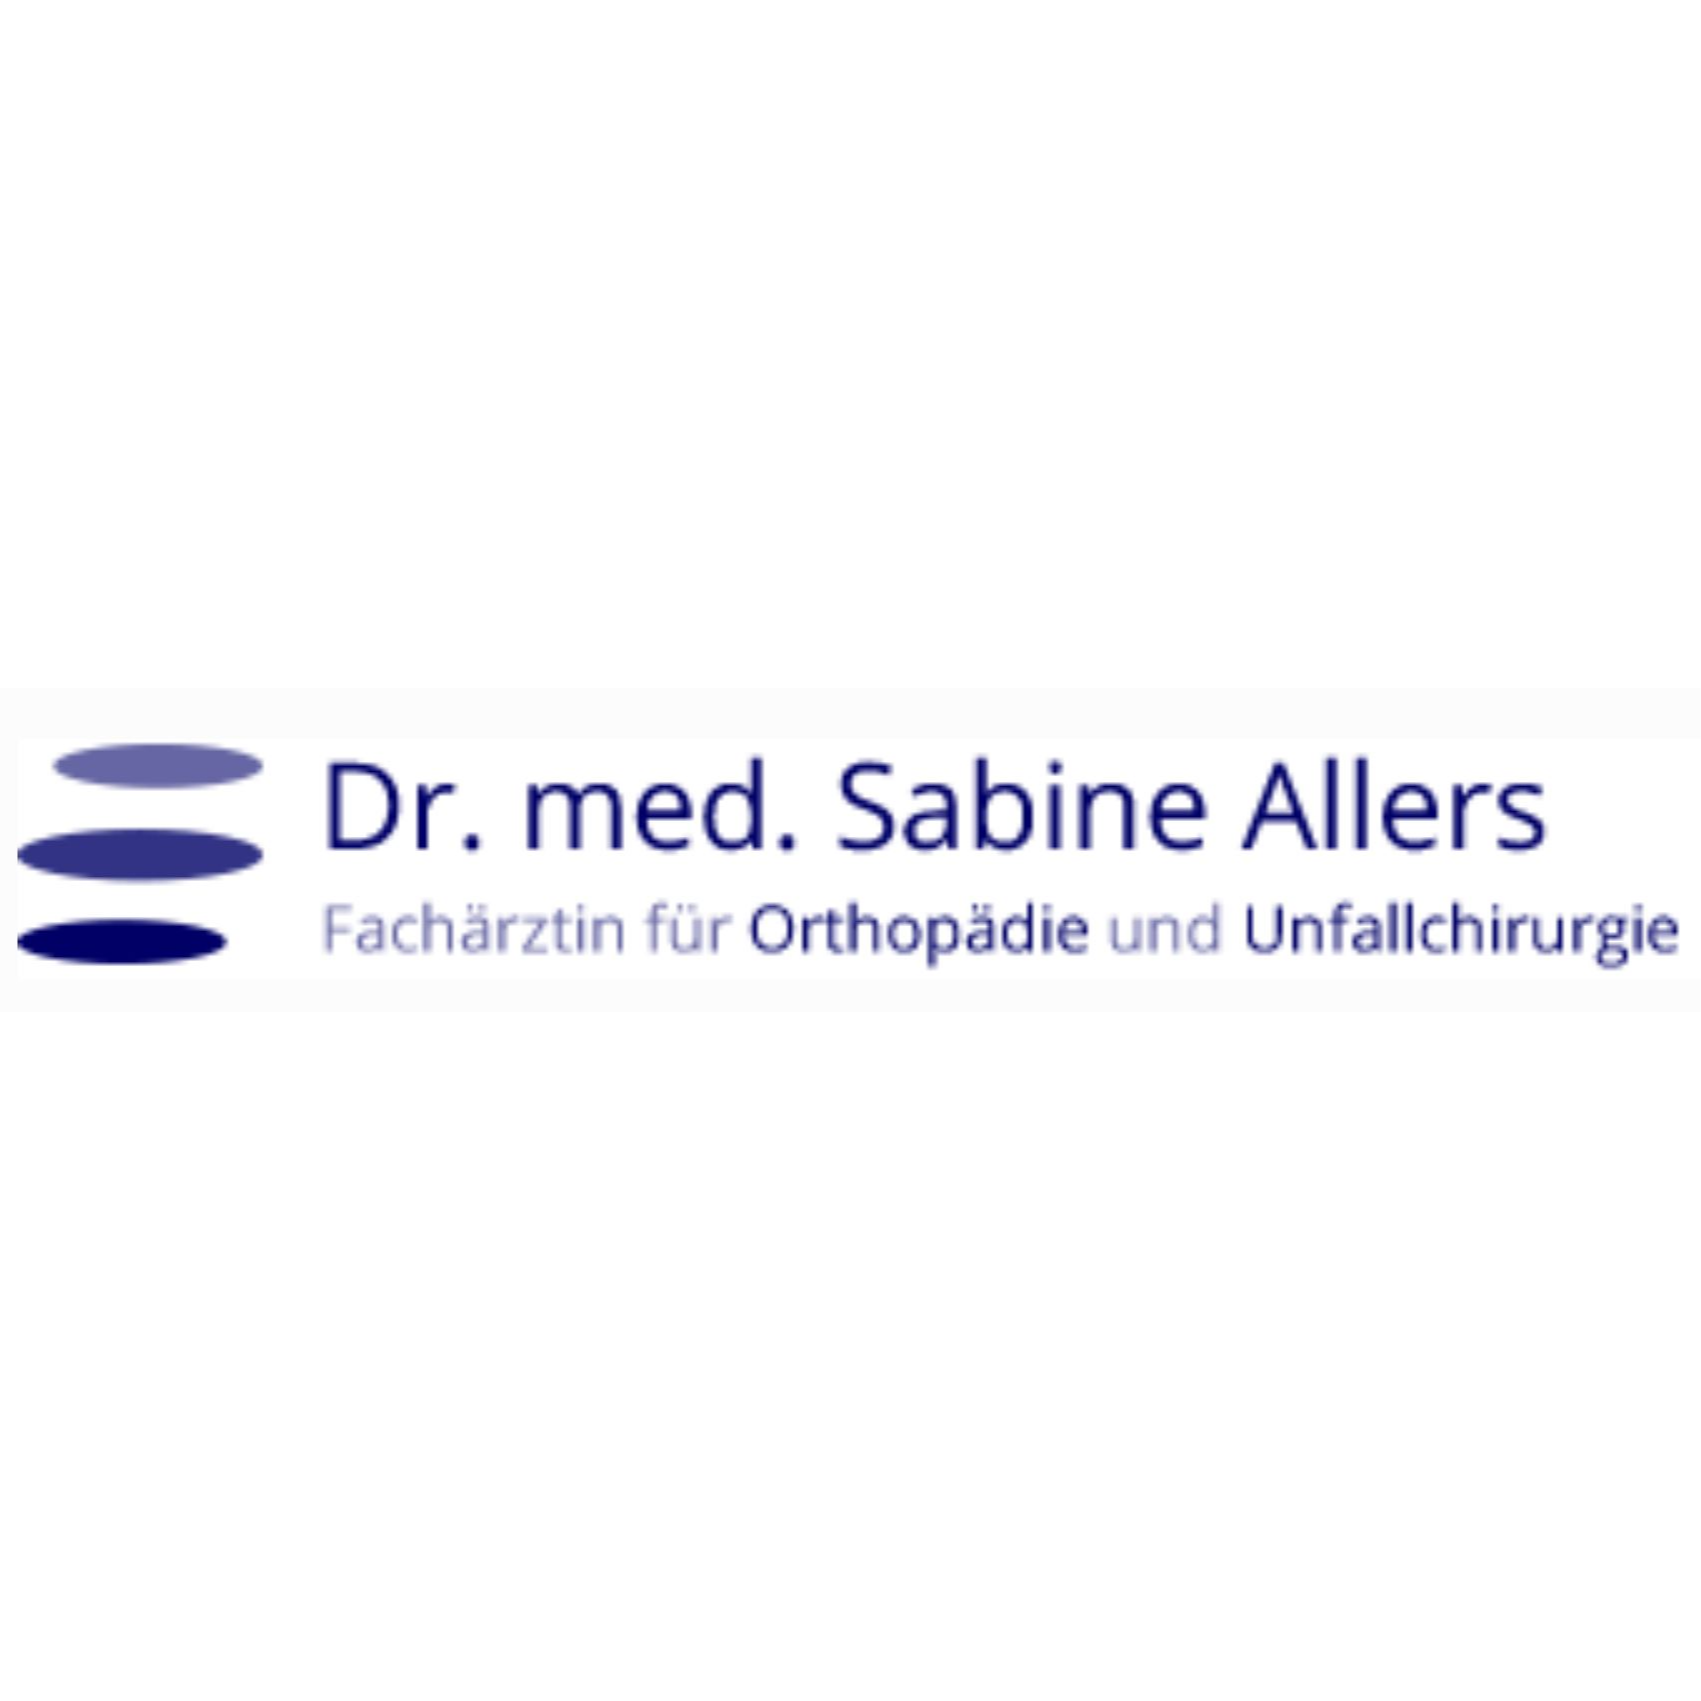 Sabine Allers FÄ f. Orthopädie u. Unfallchirurgie in Berlin - Logo